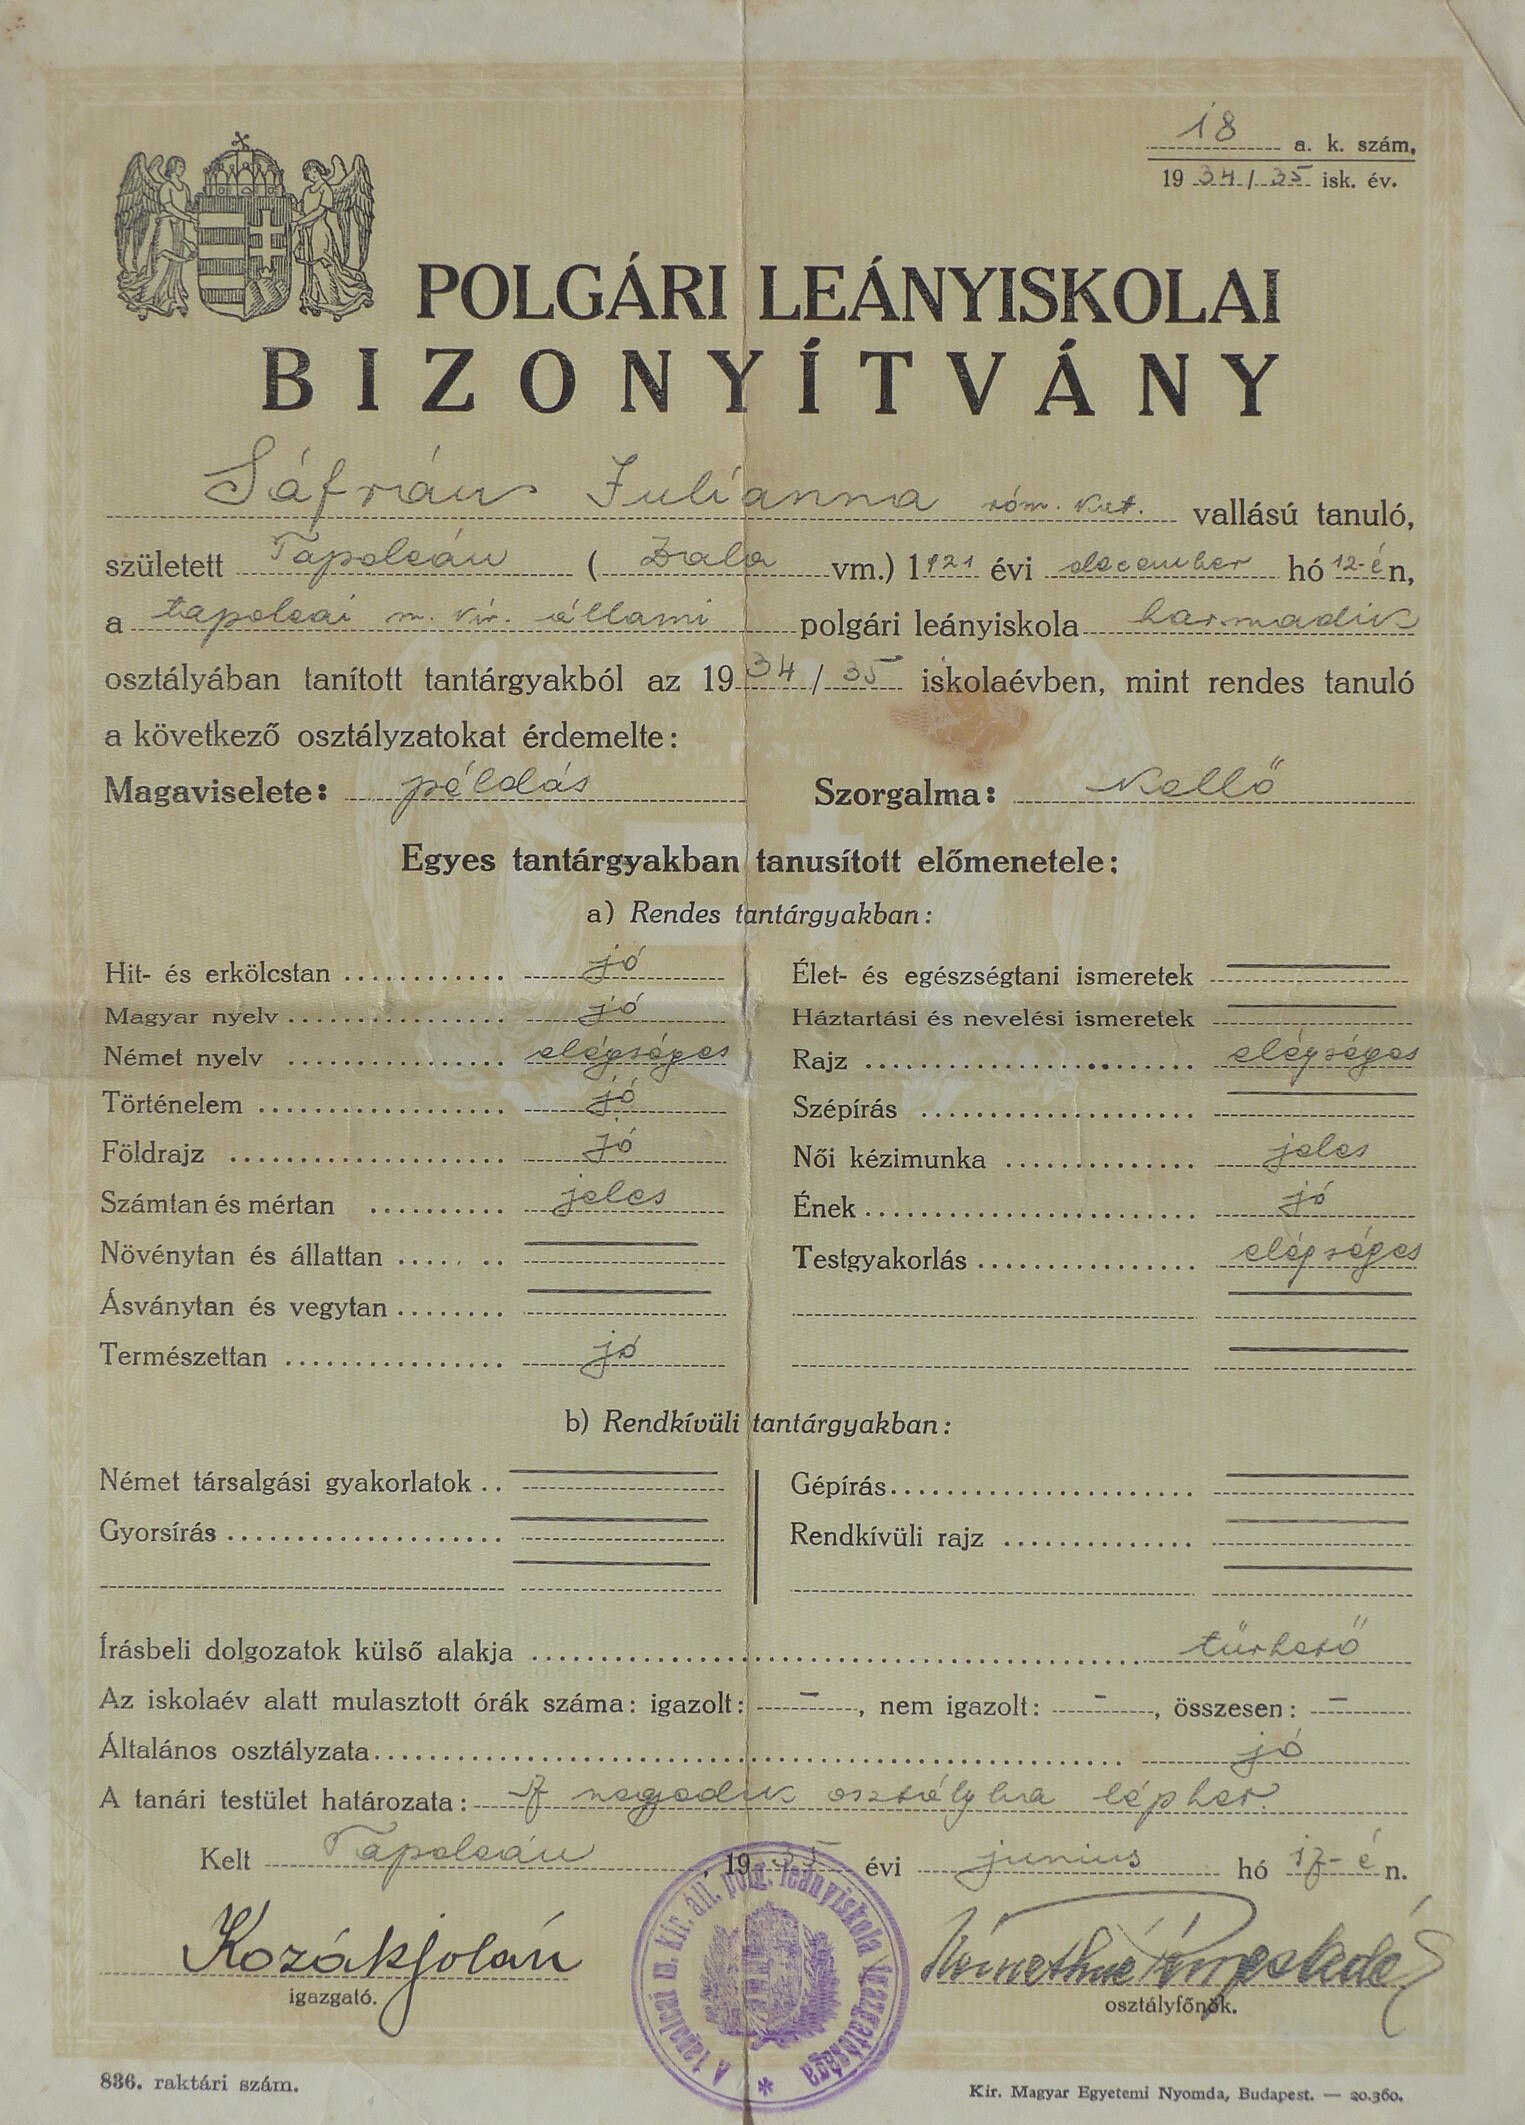 Polgári leányiskolai bizonyítvány Sáfrán Julianna részére (Tapolcai Városi Múzeum CC BY-NC-SA)